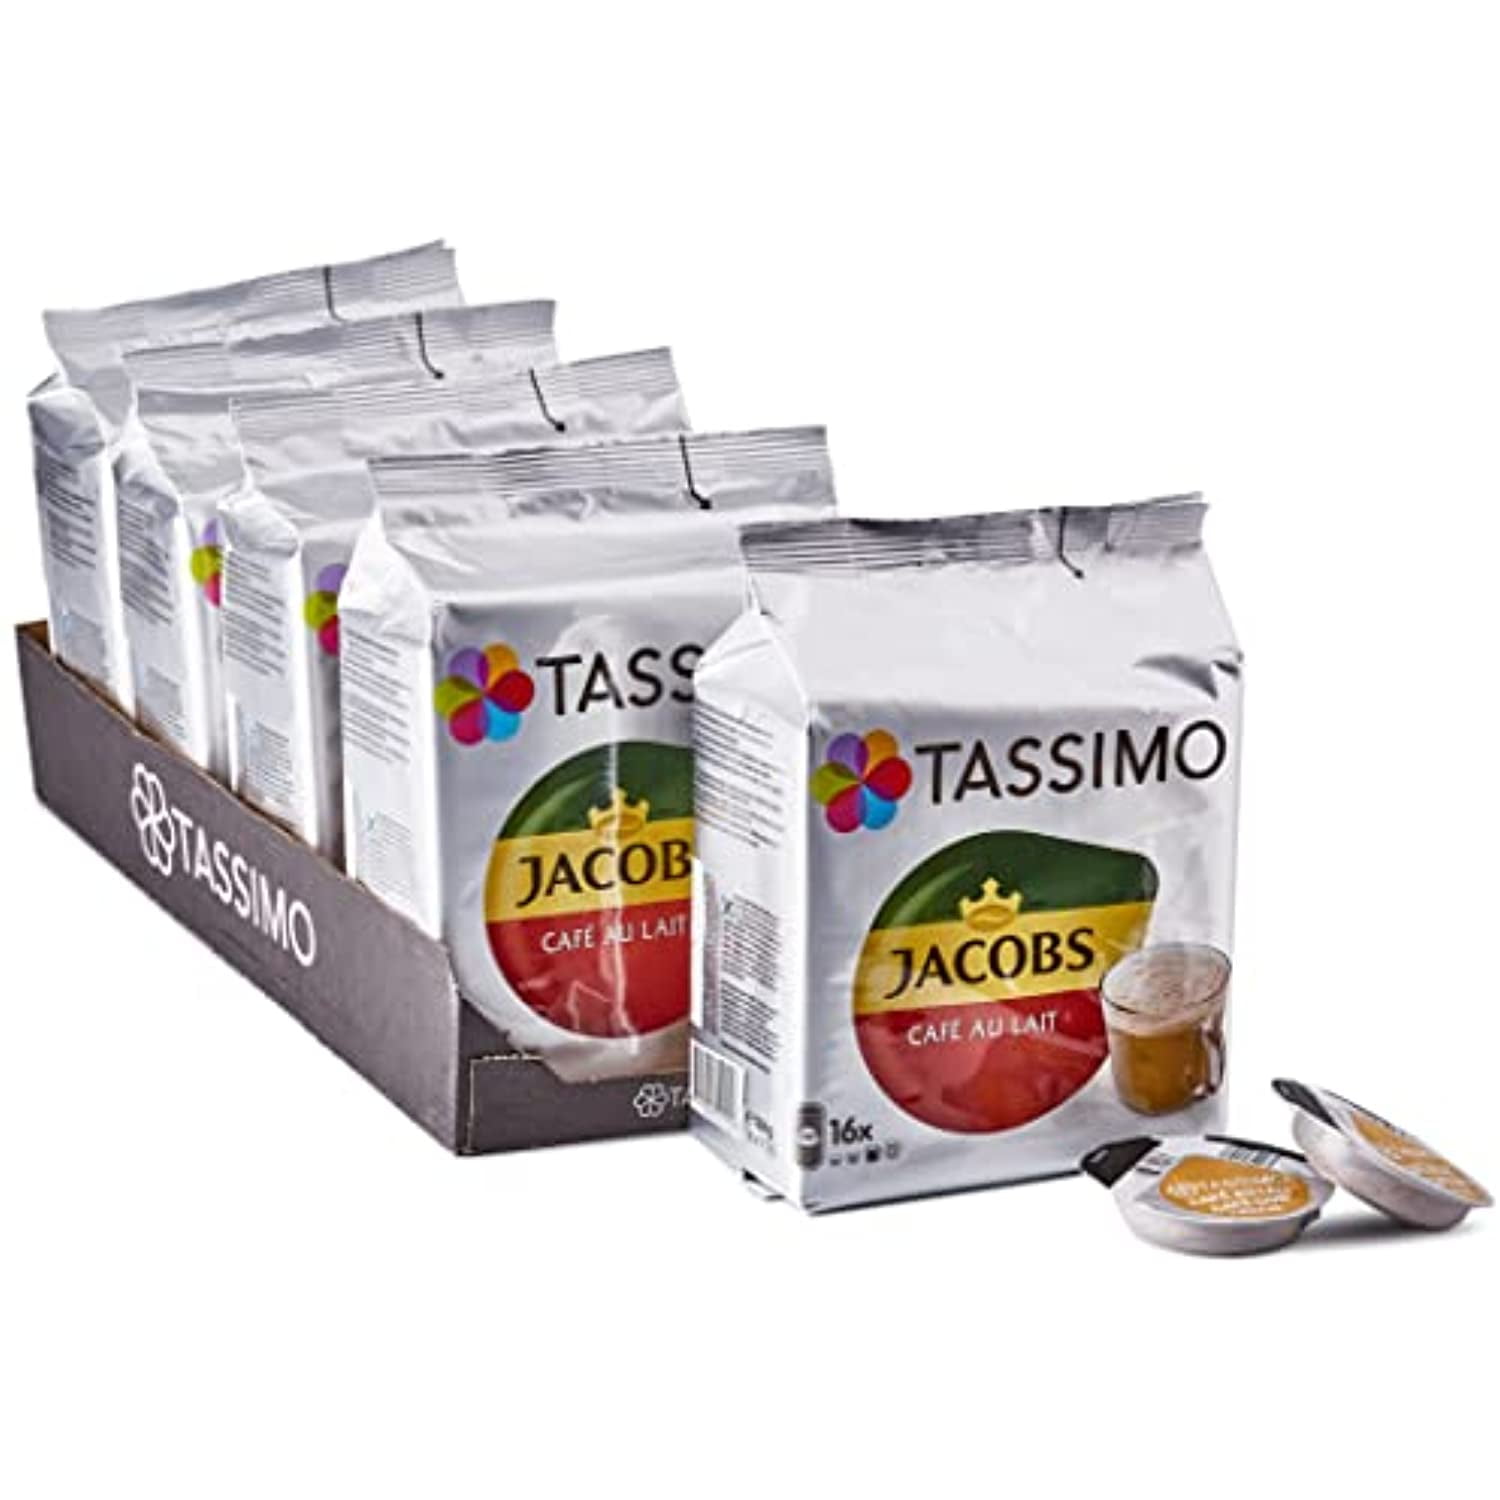 Tassimo - Jacobs Café Au Lait - 16 T-Discs